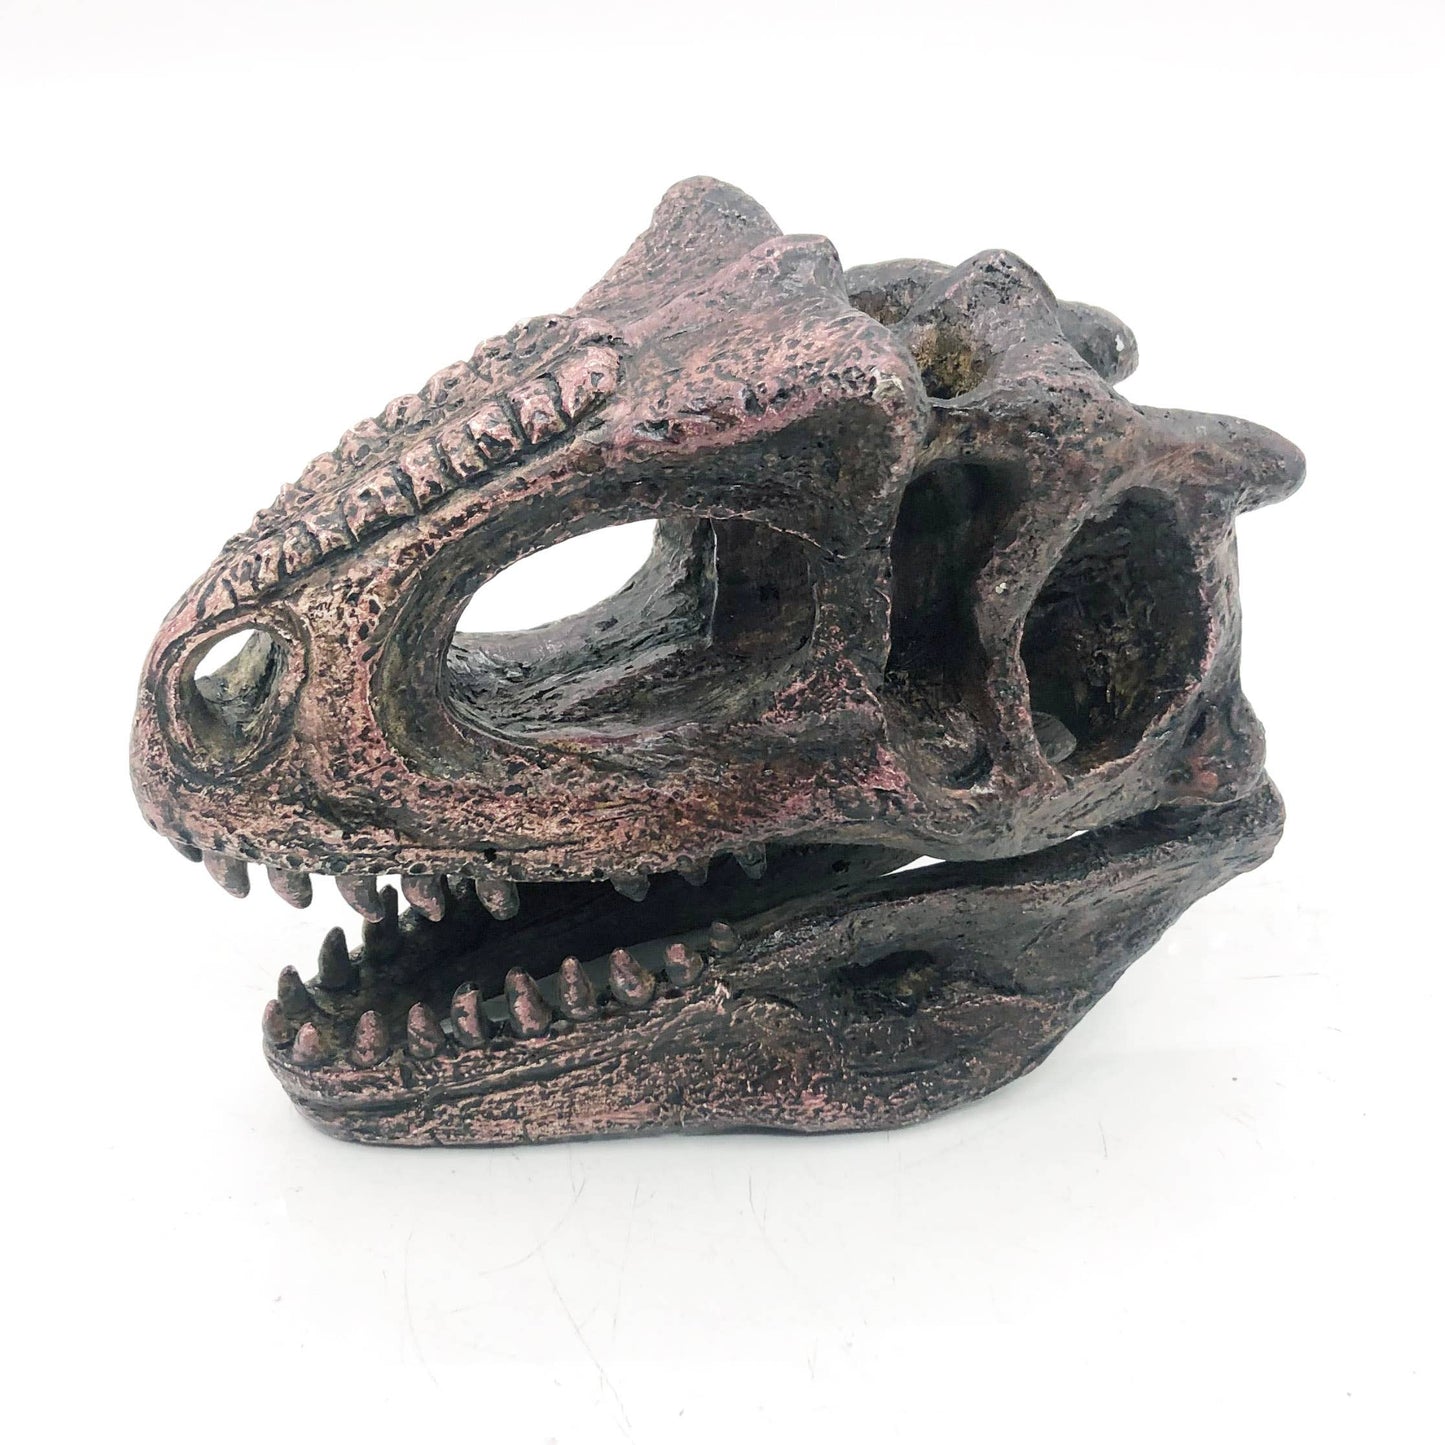 Replica Carnotaurus Mini Dinosaur Fossil Skull - Stemcell Science Shop